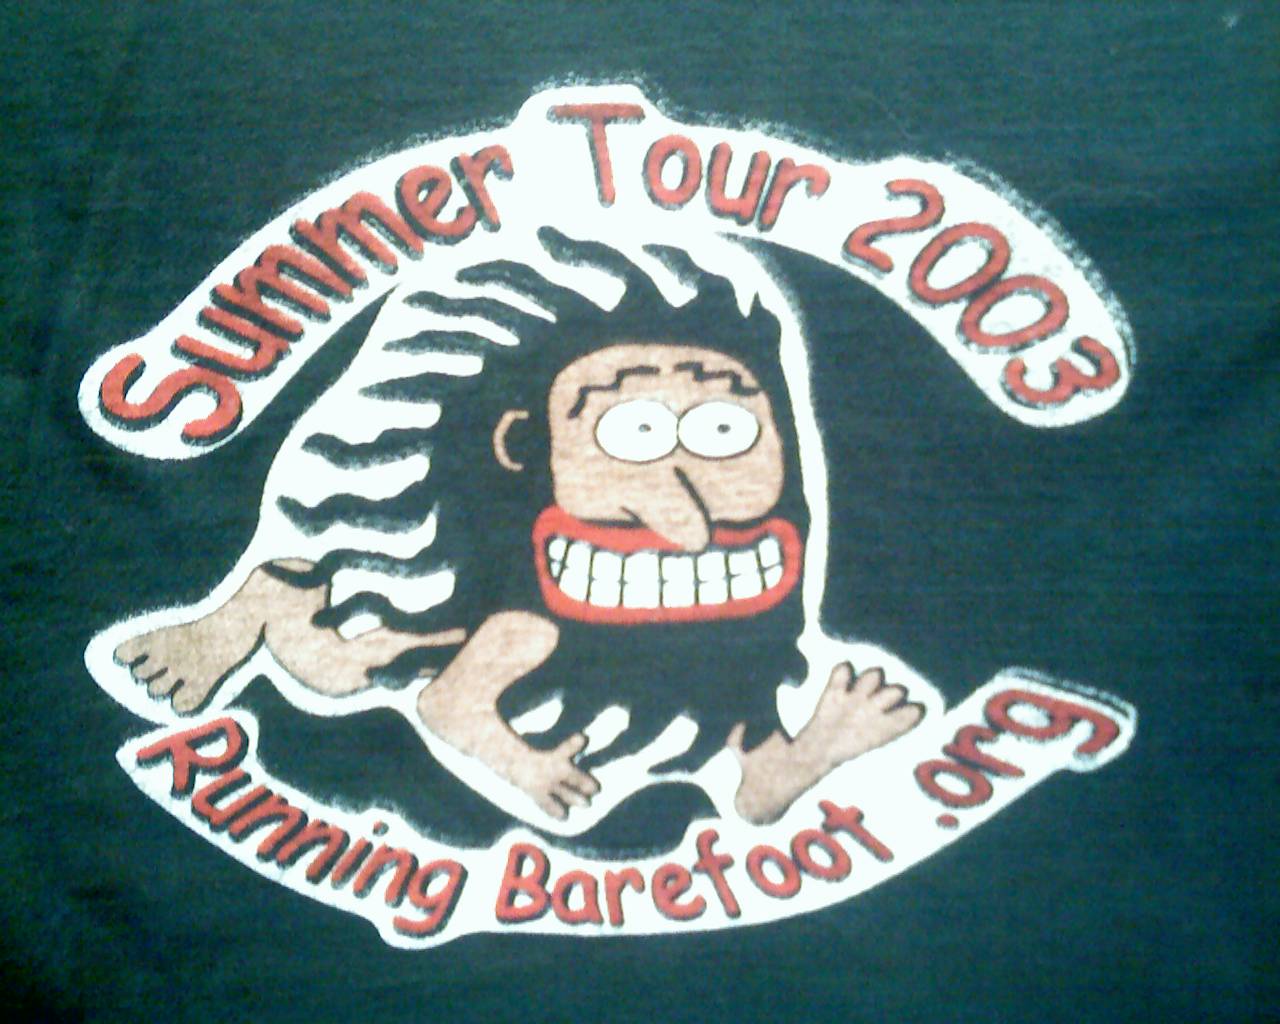 Running Barefoot 2003 Summer Tour logo